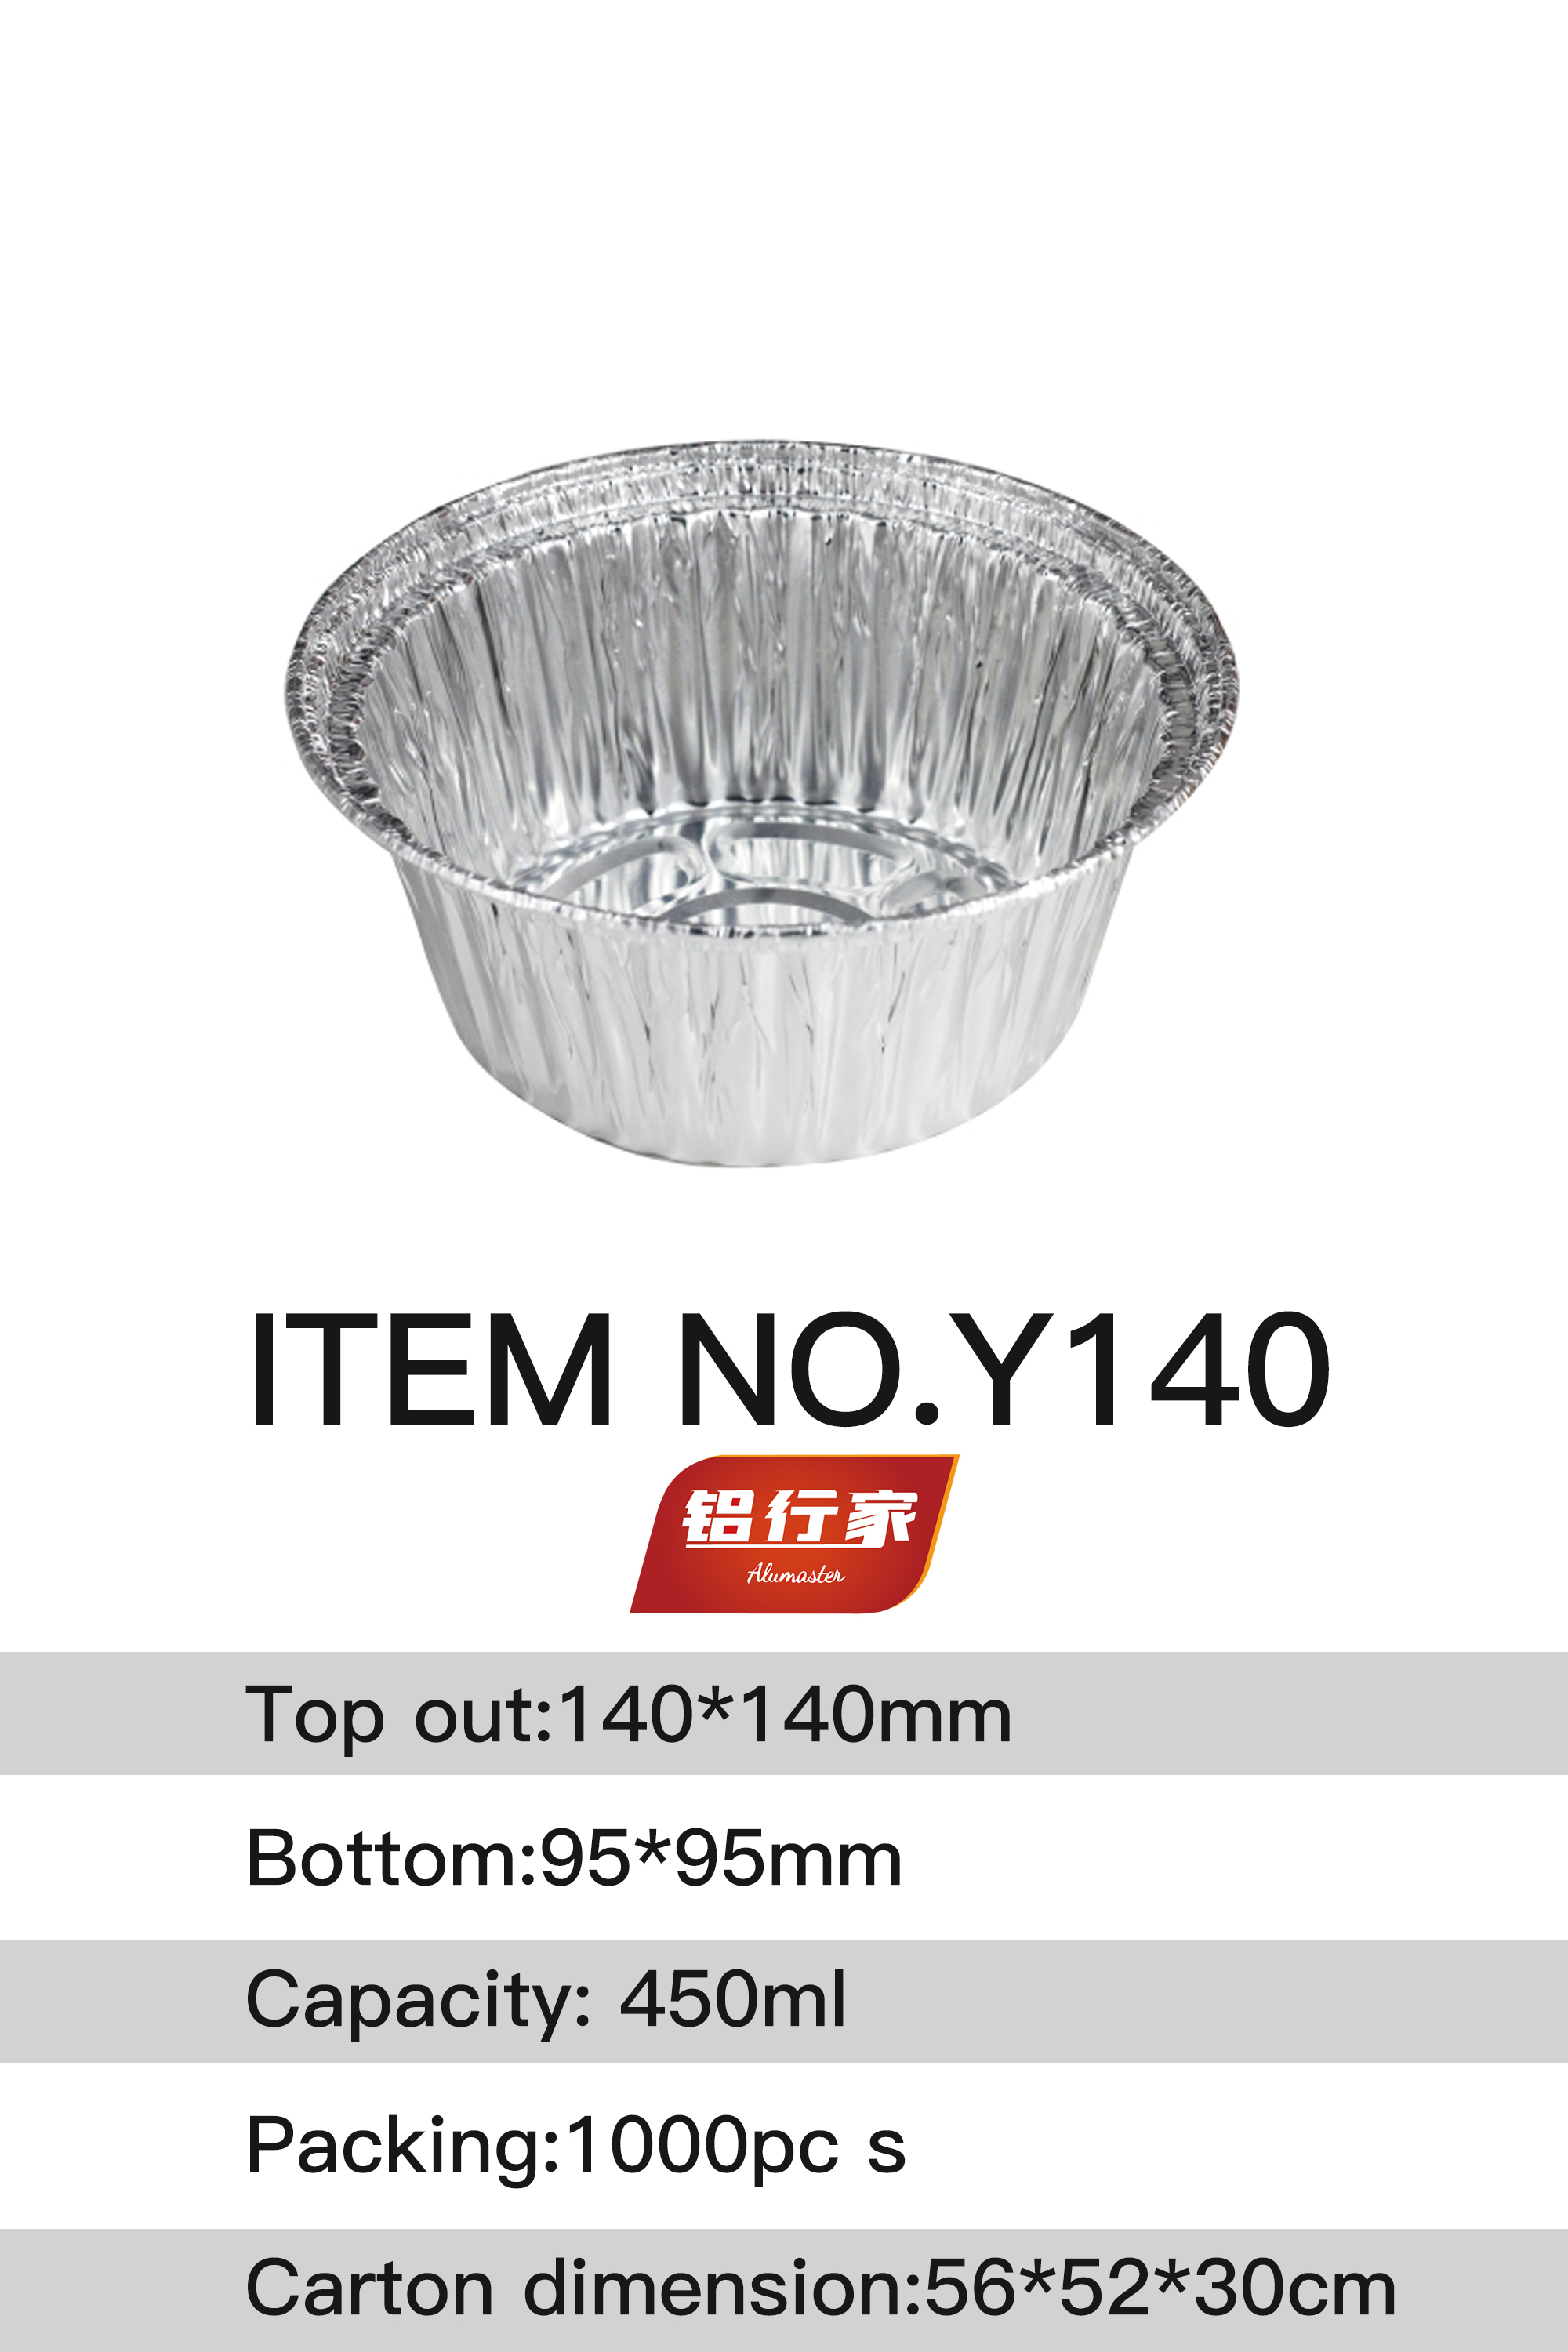 铝行家铝箔餐盒Y140/450